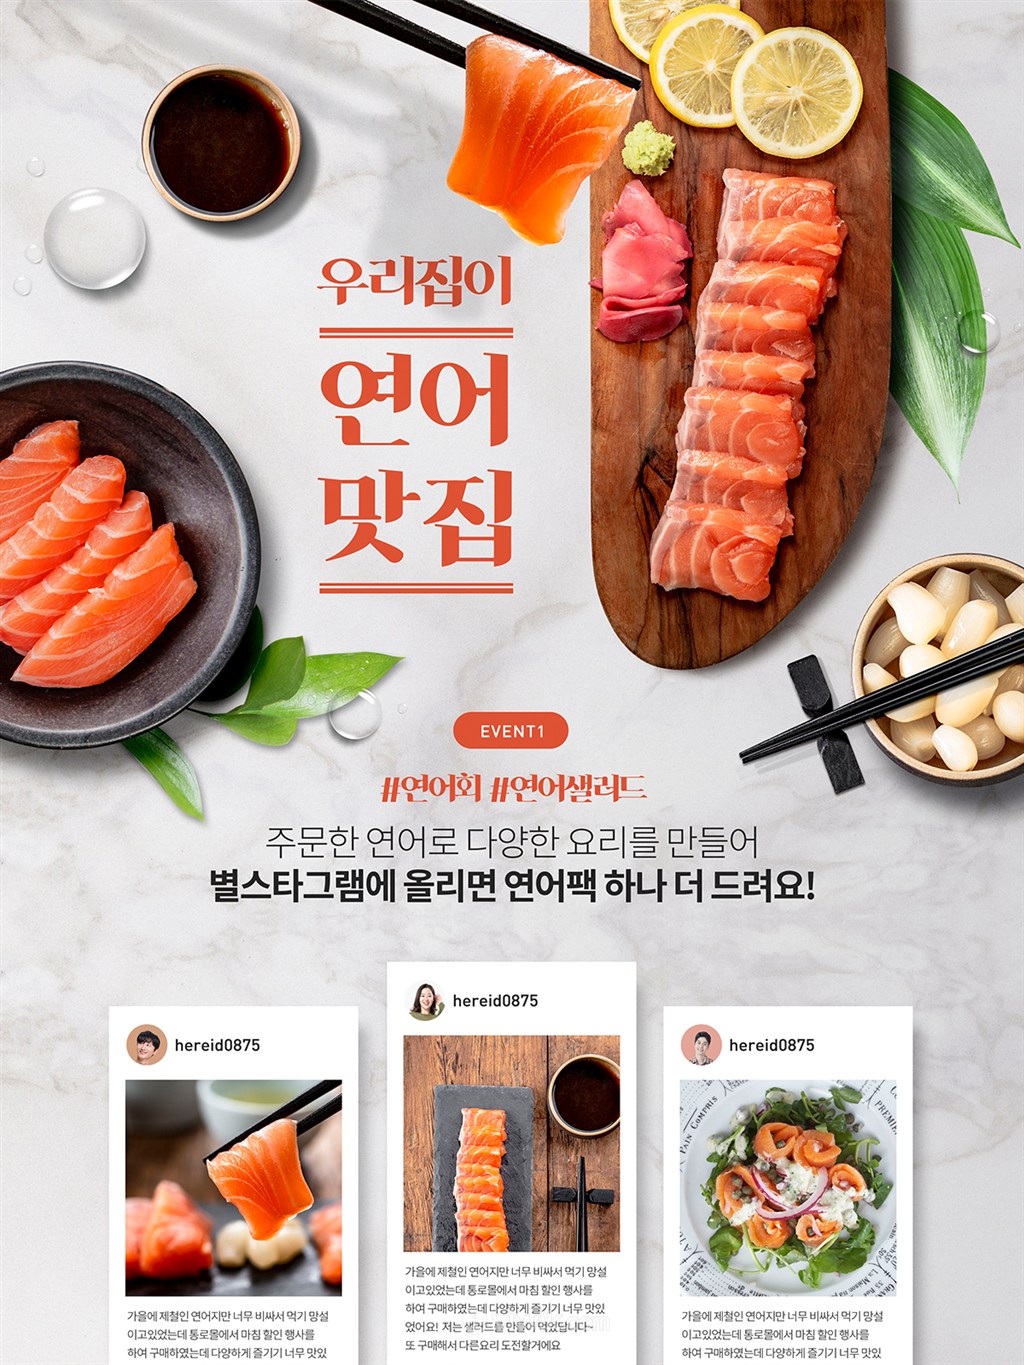 韓國三文魚美食打折促銷網頁設計素材